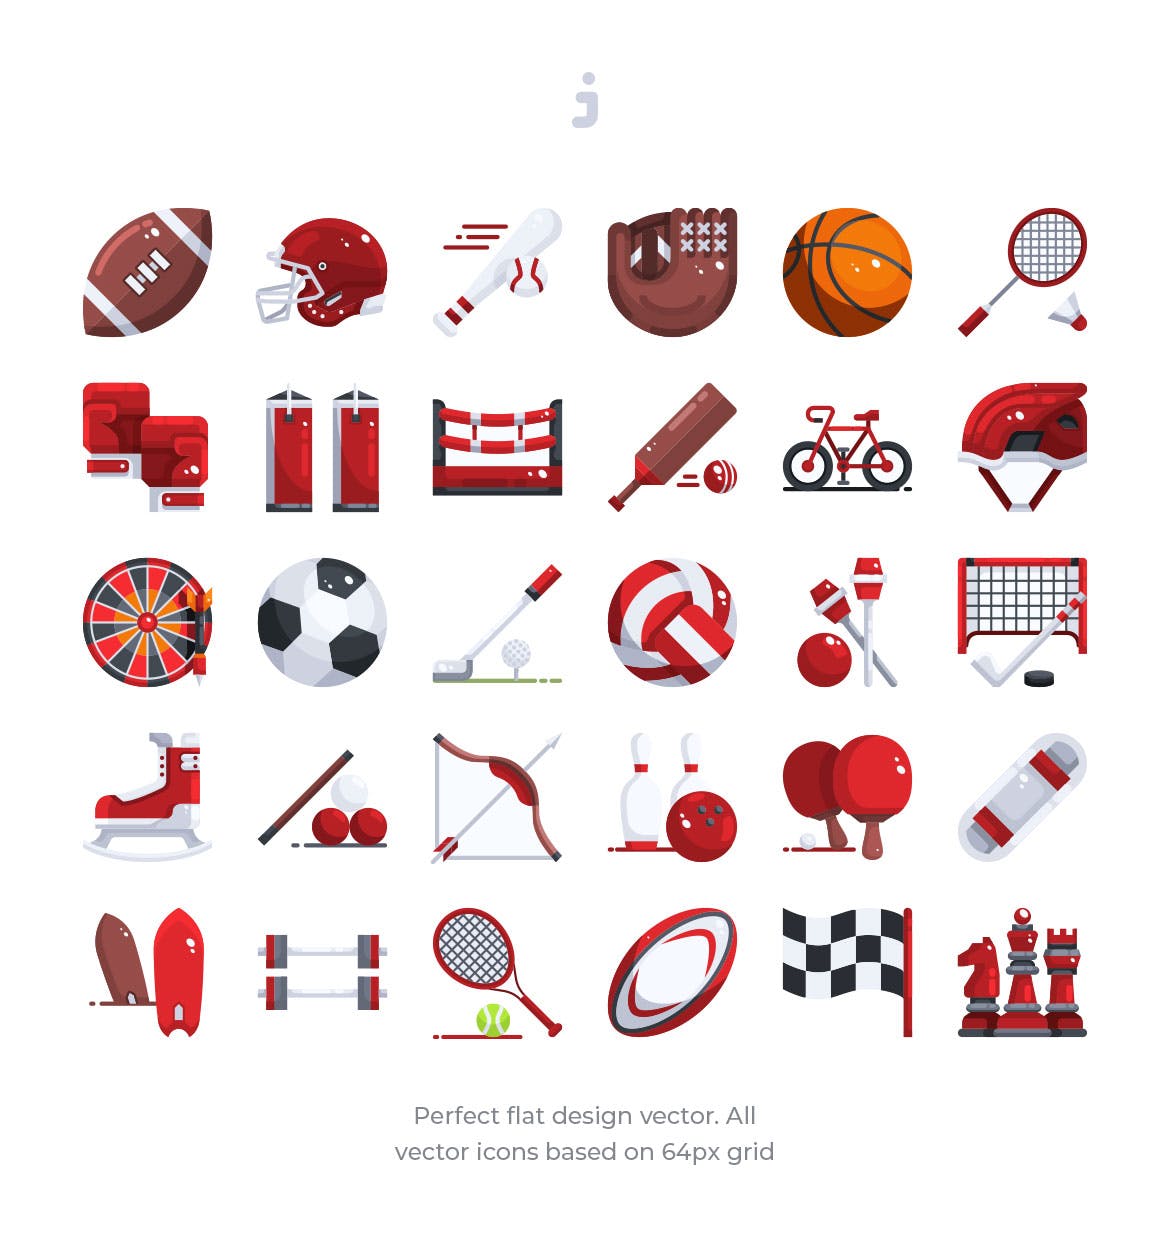 30枚体育运动器械彩色矢量图标素材 30 Sport Element Icons – Flat插图(1)